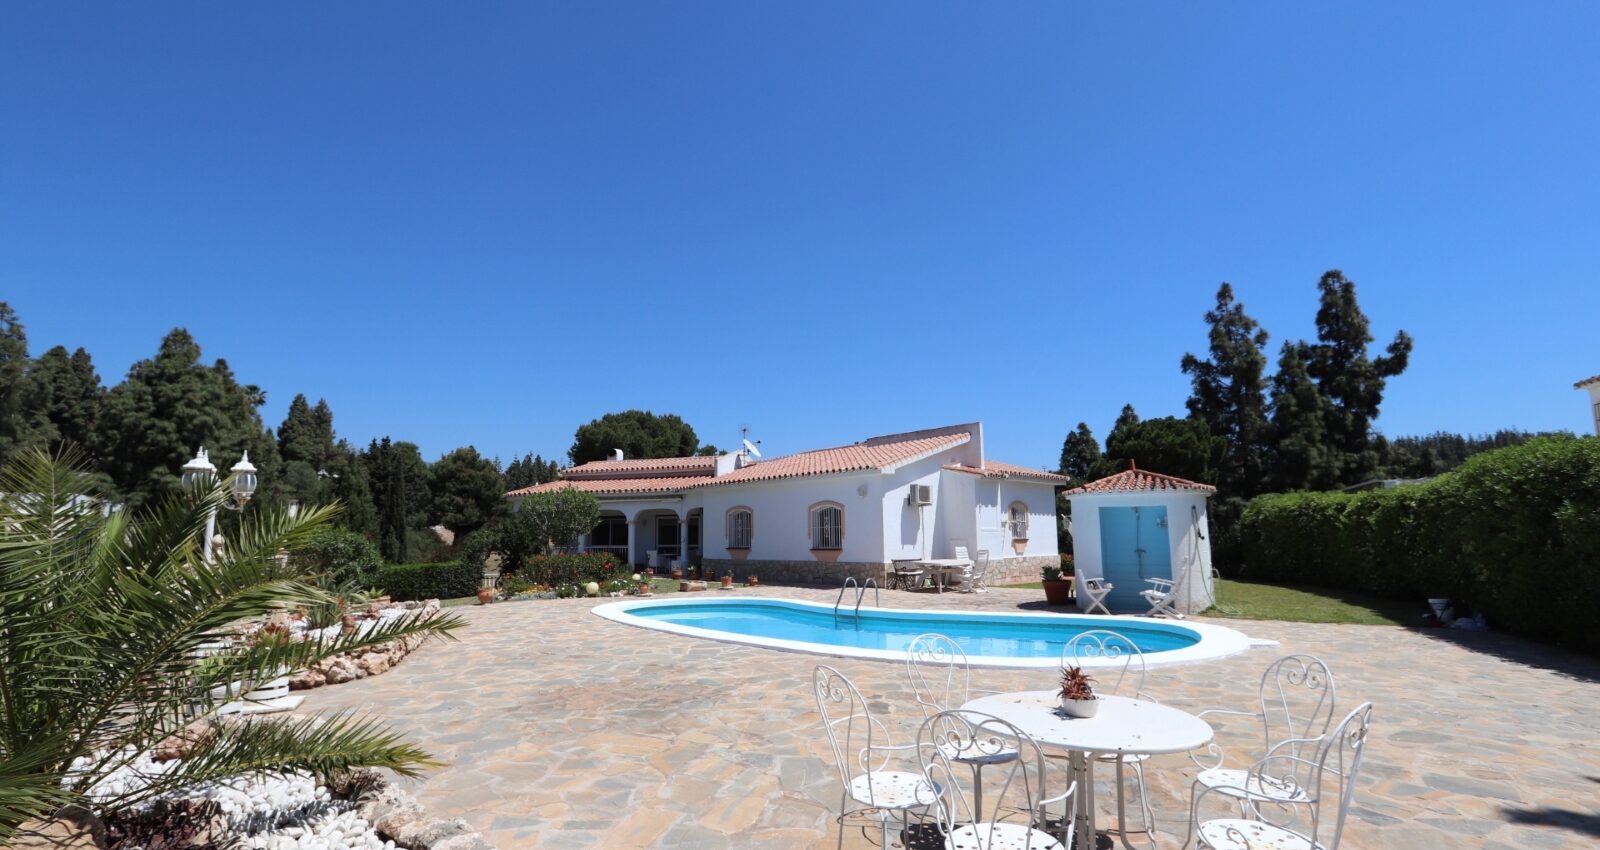 Wunderschöne Villa in traditionellen andalusischen Stil in Mijas Costa